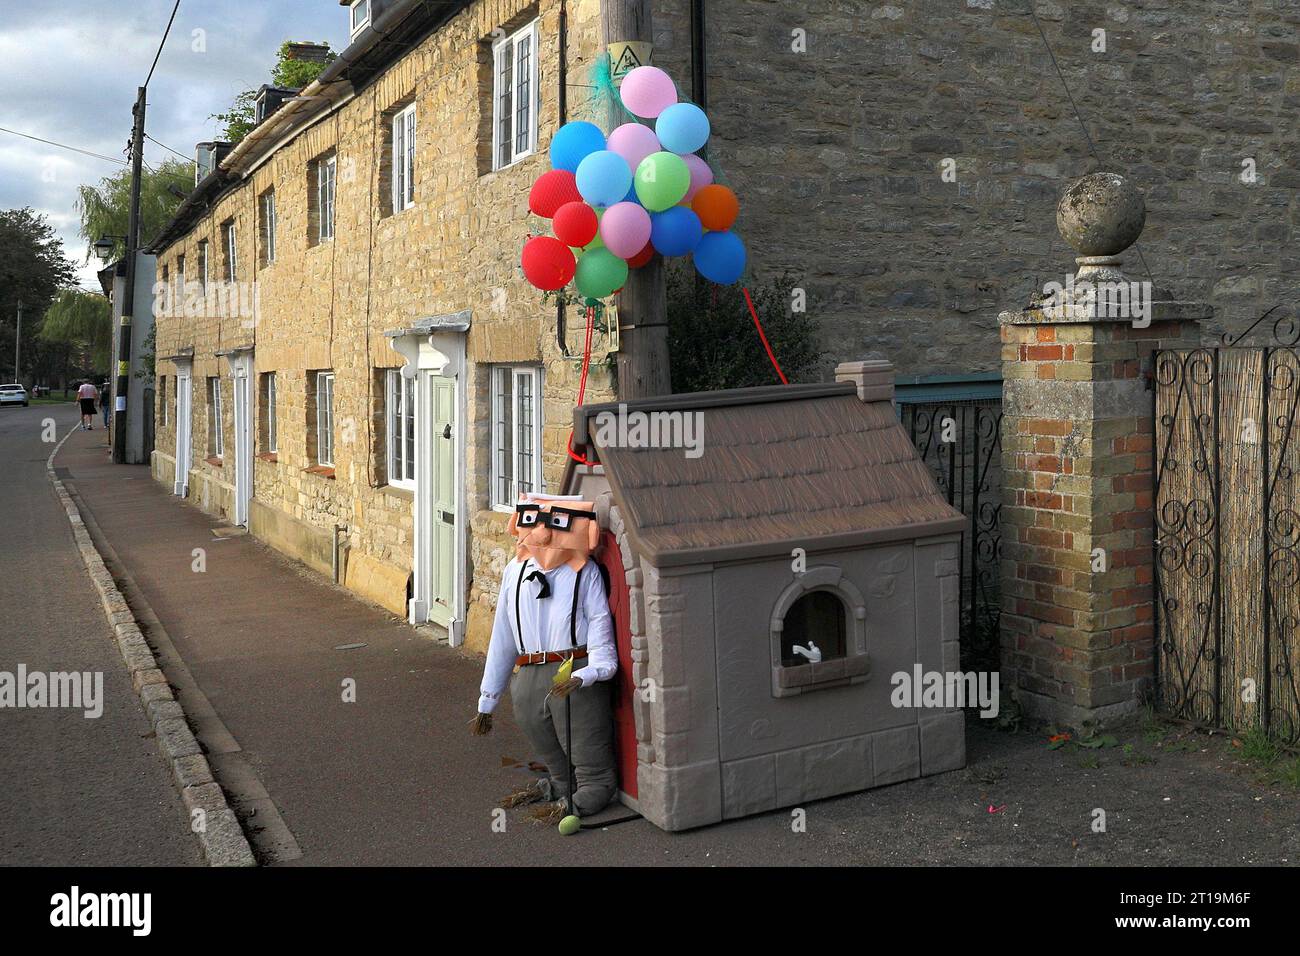 Carl Fredricksen e i personaggi scavati dalla scena della Flying House nel film Disney Up al festival dello spaventapasseri del villaggio a Sharnbrook, Bedfordshire, Inghilterra, Regno Unito Foto Stock